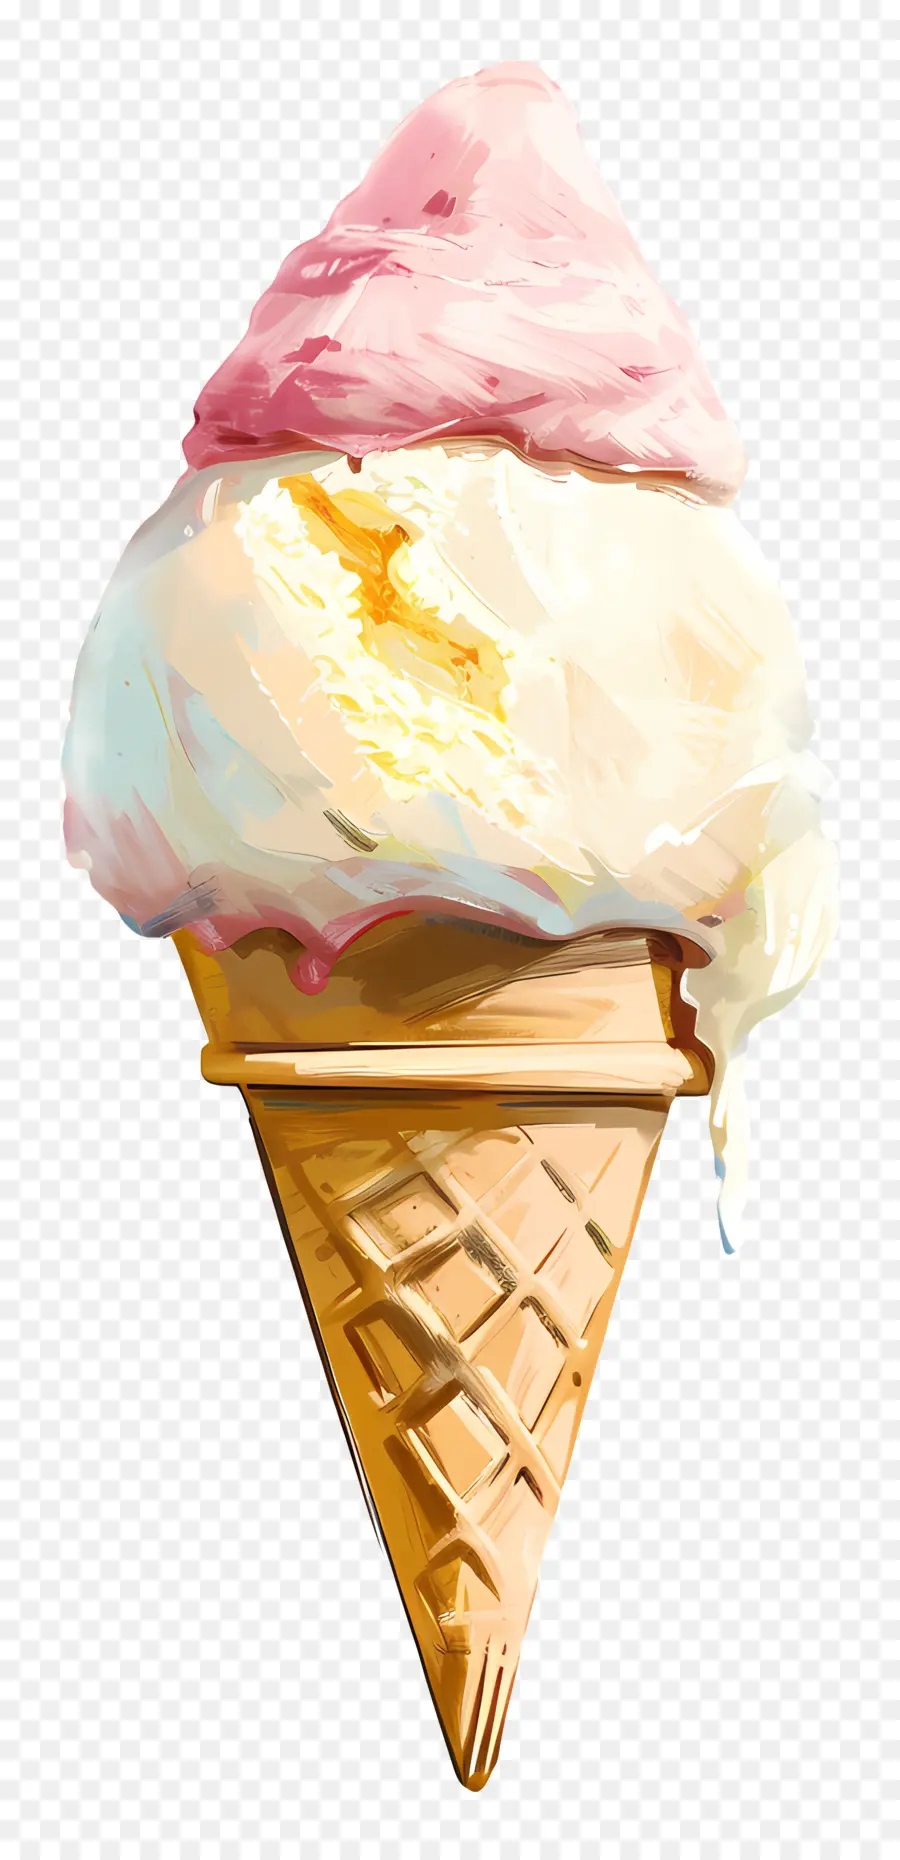 gelato - Cone gelato alla vaniglia colorato su tovagliolo